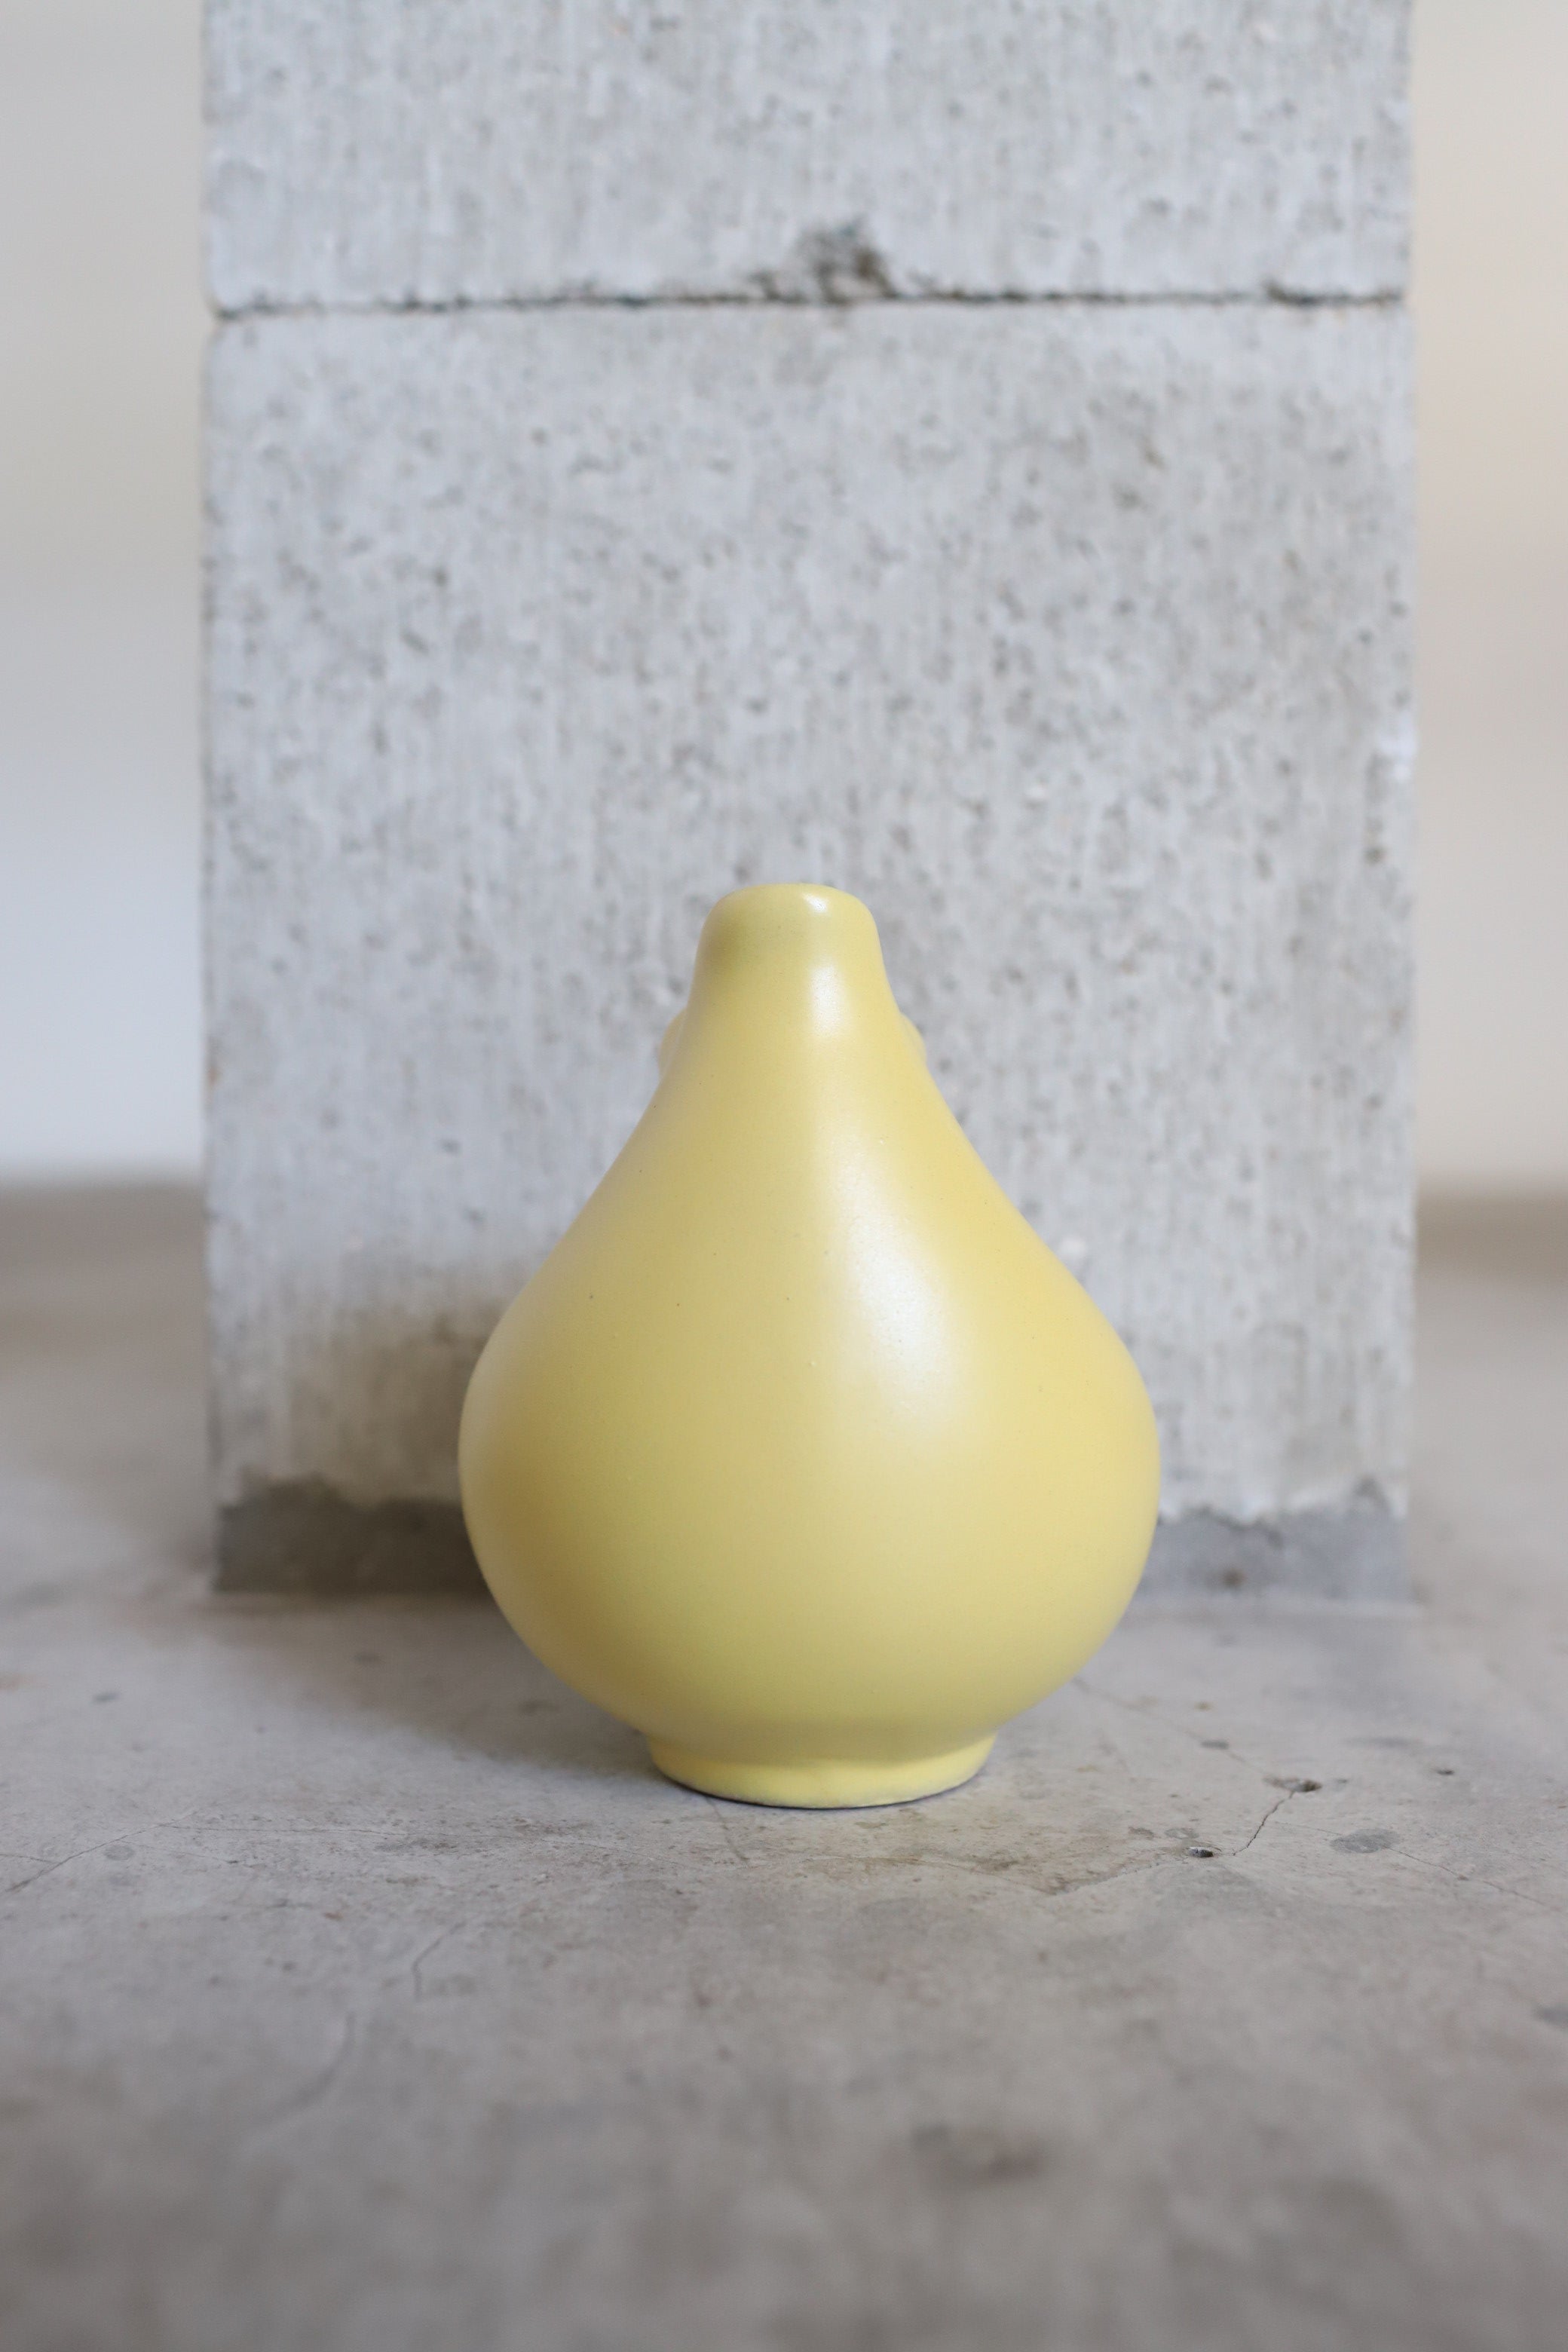 February Vase #7